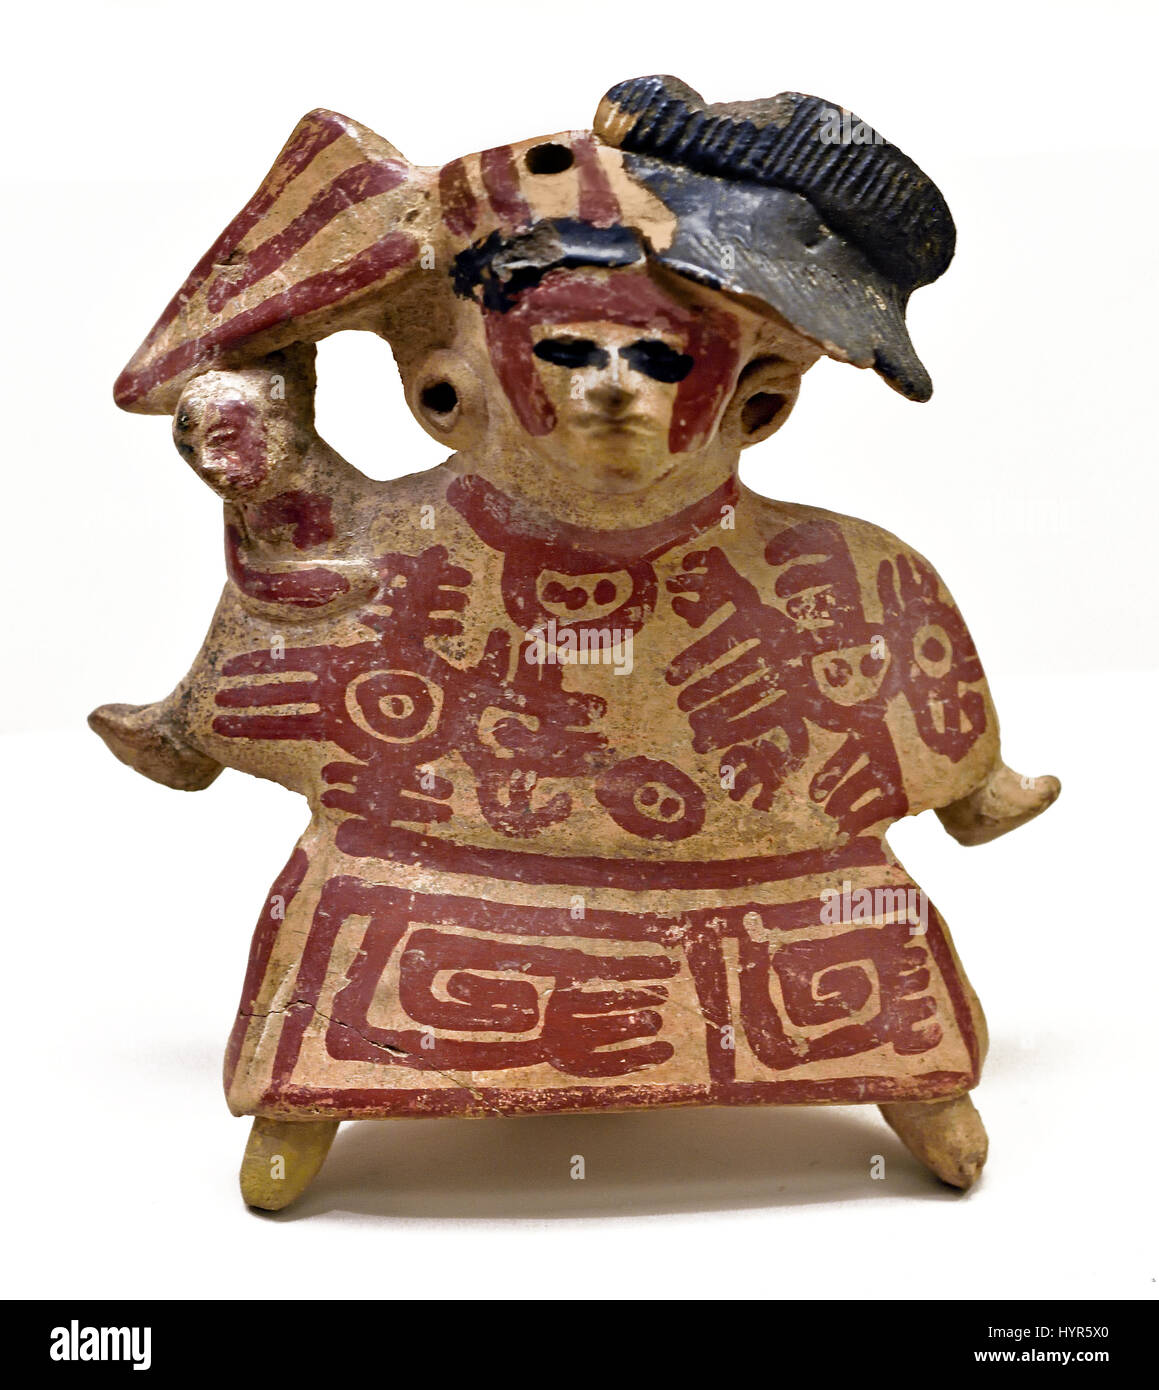 Sifflet de poterie d'une femme portant un enfant, Veracruz classique 300 - 1200 AD, ( les Mayas - la civilisation Maya est une civilisation méso-américaine dans le Yucatán au Mexique et au Belize en Amérique centrale ( 2600 BC - 1500 ) Américain Précolombien ) Banque D'Images